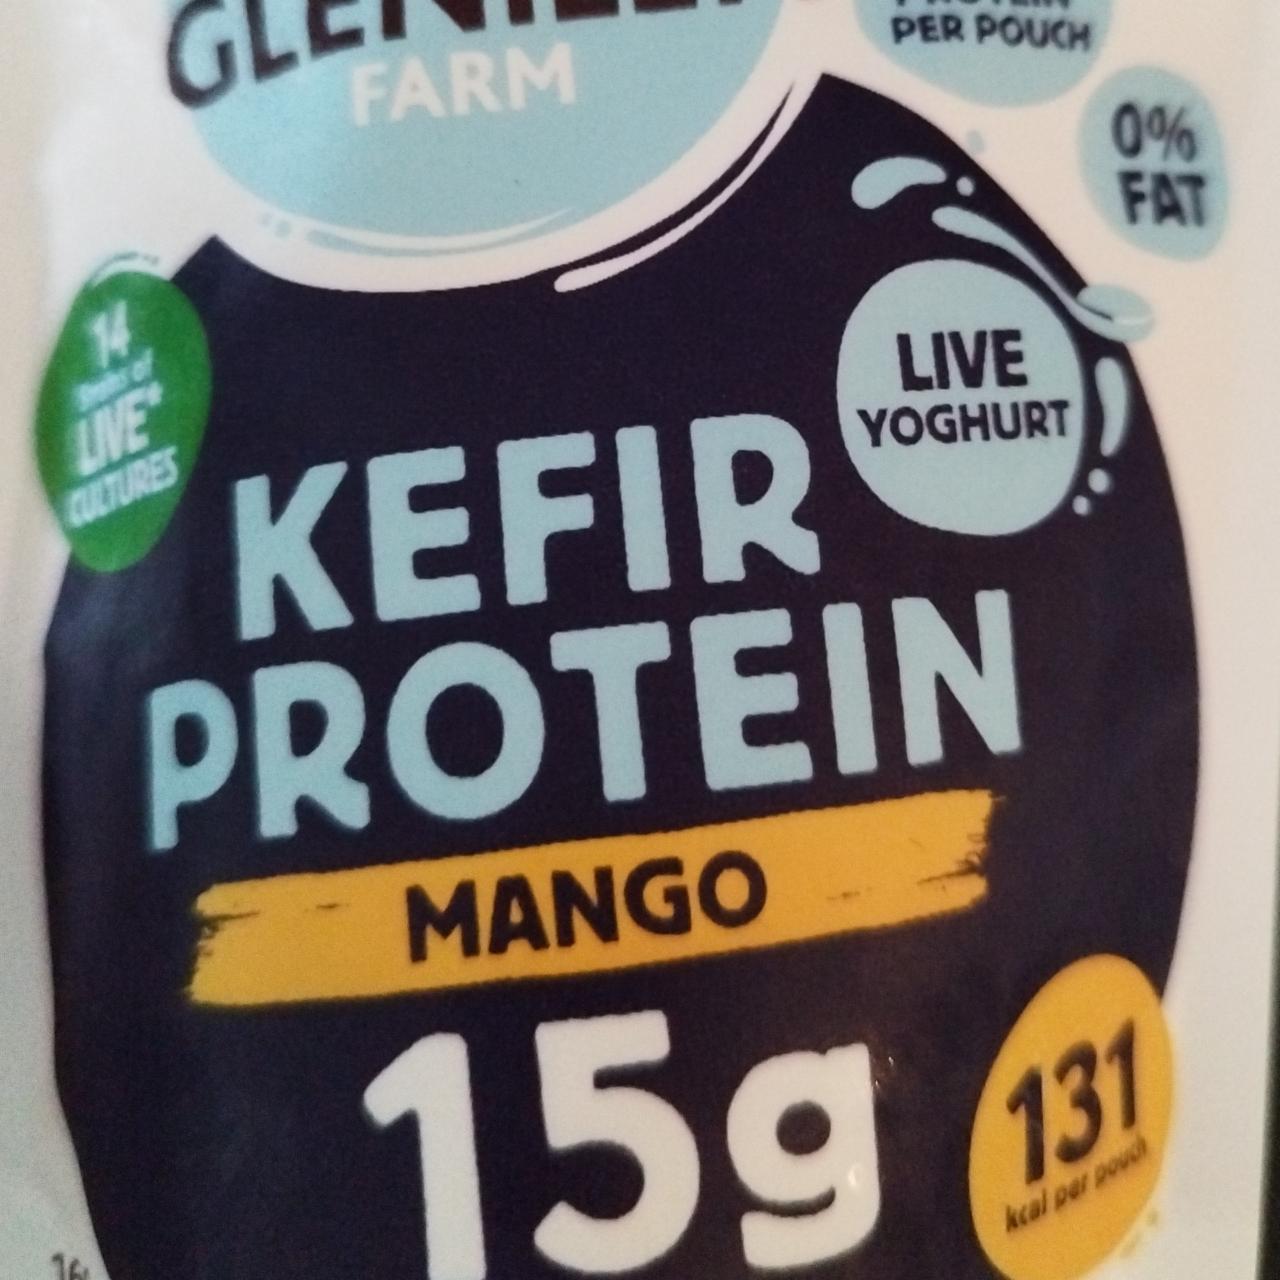 Fotografie - Kefir protein Mango Glenilen Farm